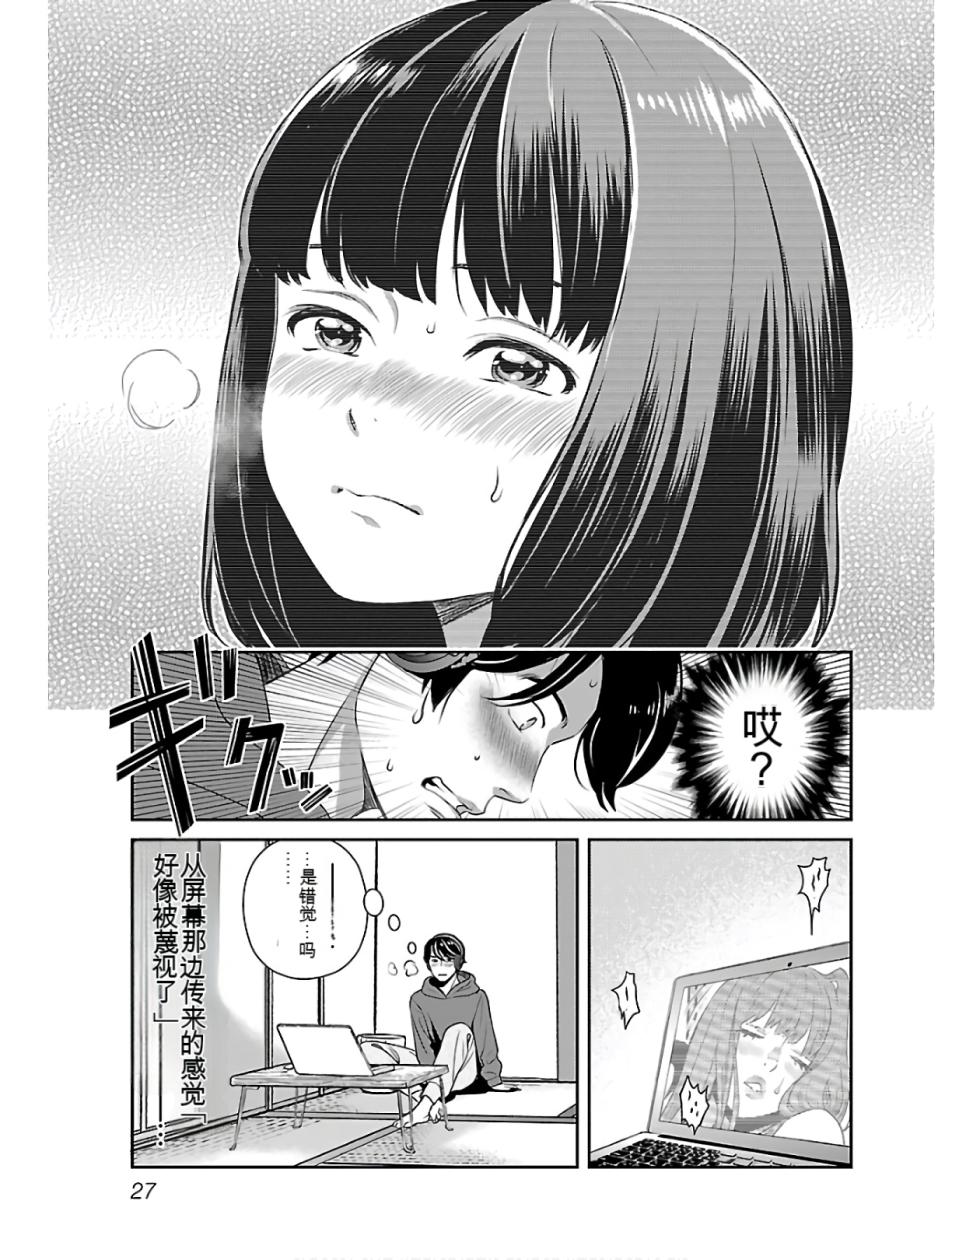 [ORIKASA Ryoko] Saru mono wa hibi ni utoshi vol 01-07 机翻汉化 - Page 29